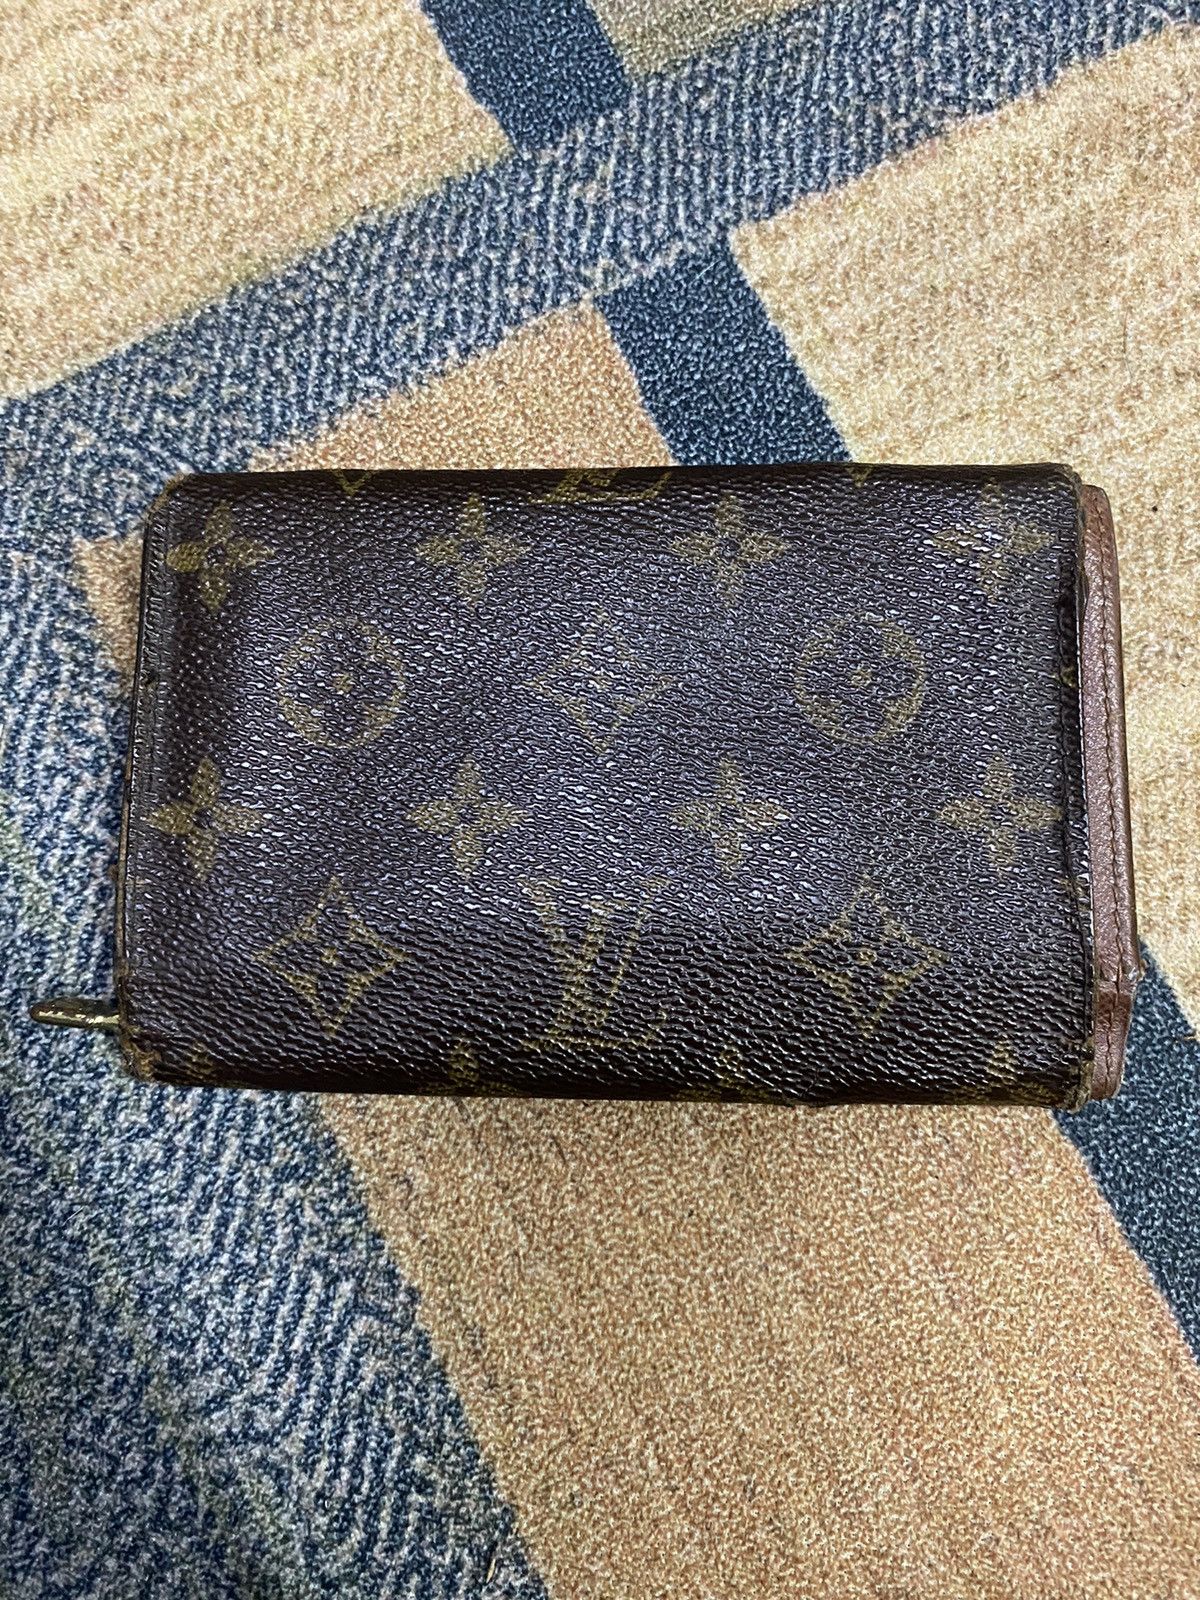 Authentic Vintage Louis Vuitton Wallet - 2